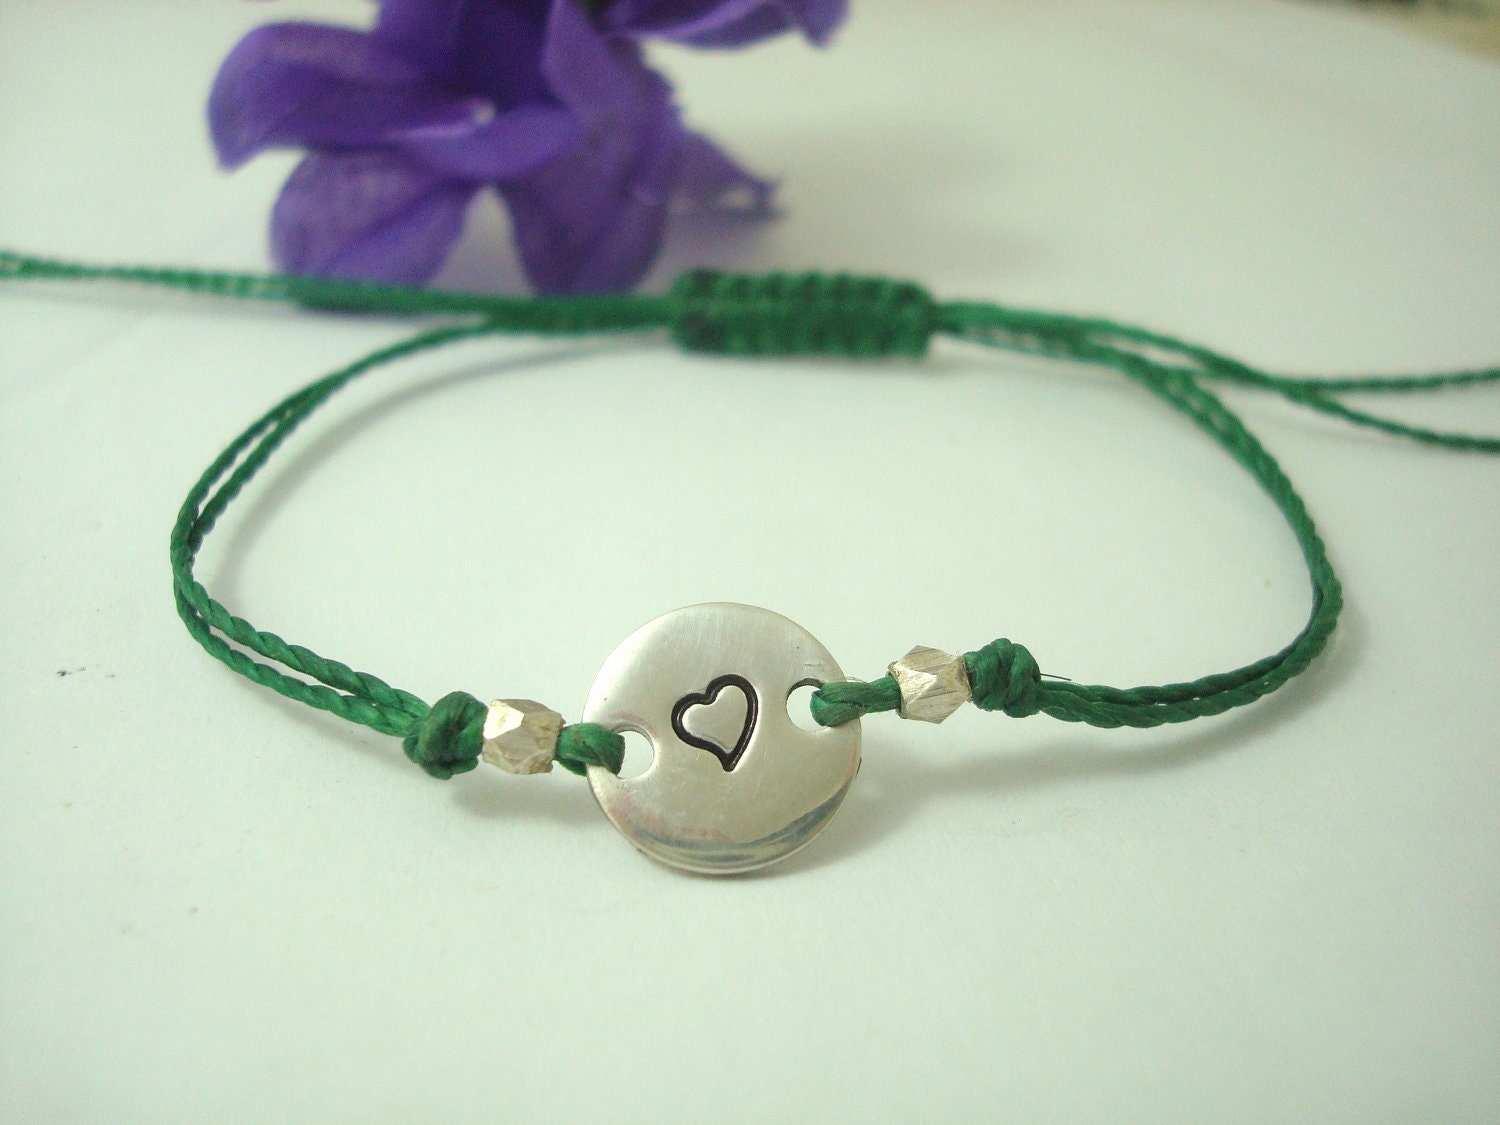 handstamped heart bracelet. friendship bracelet. love bracelet. green wax thread bracelet